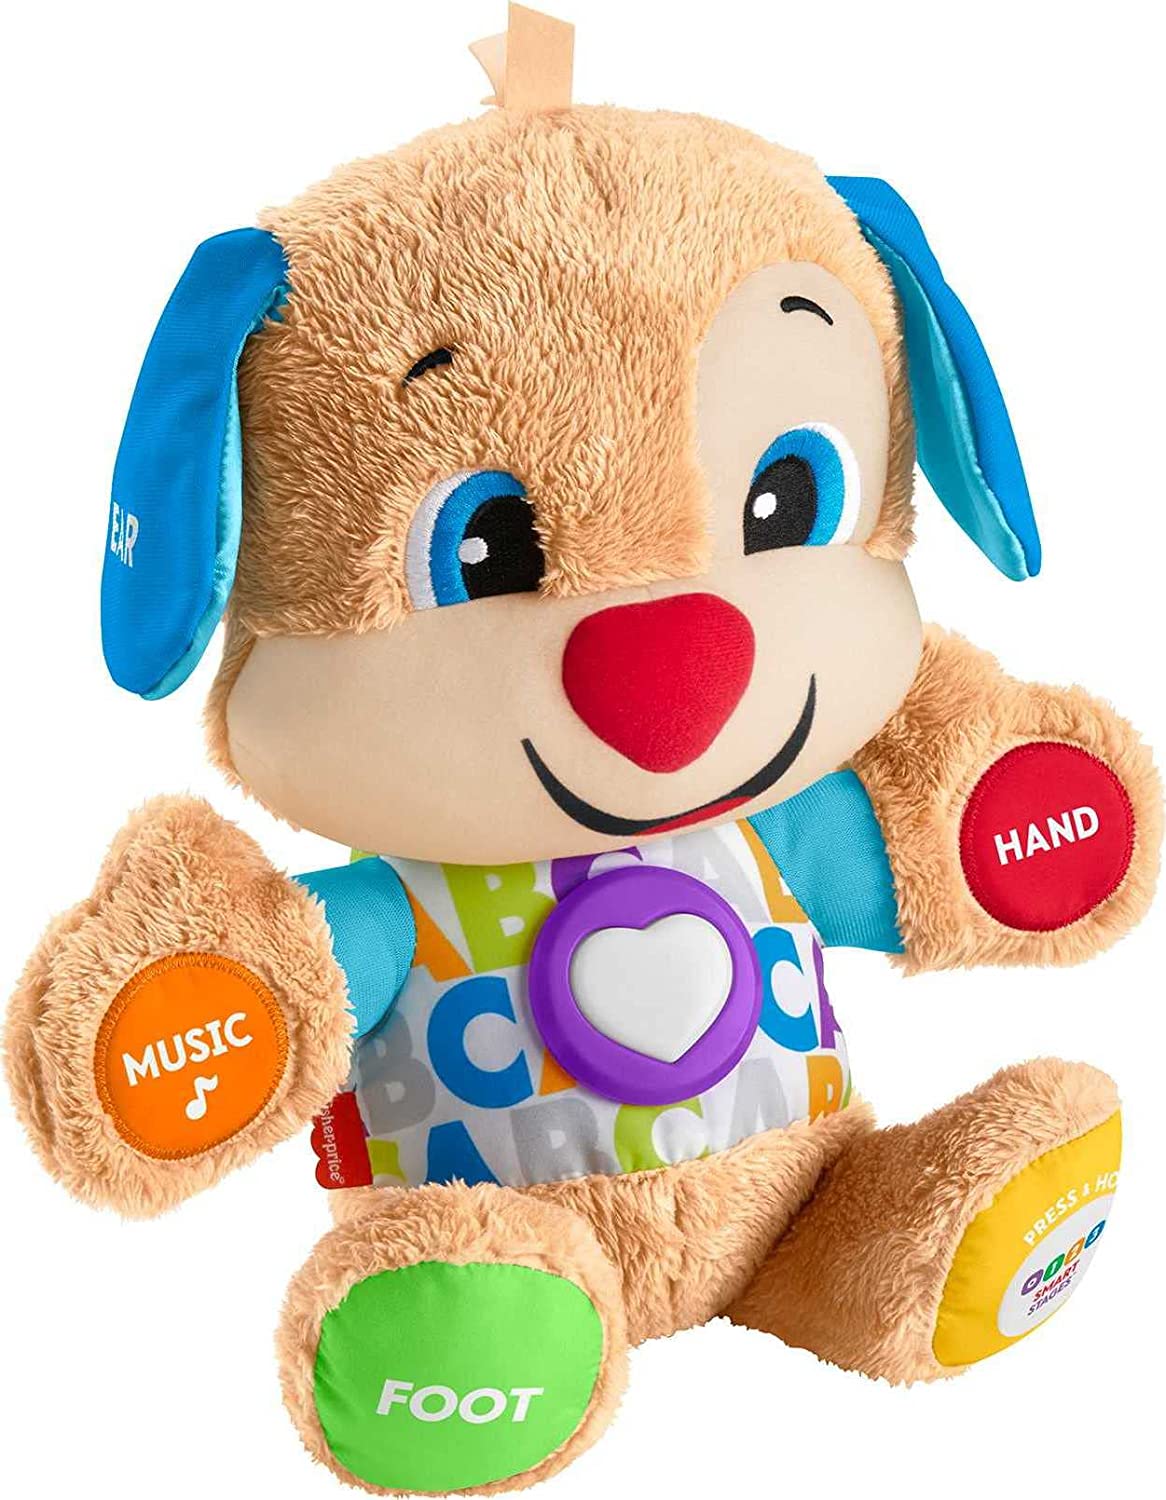 Đồ chơi Chó con Puppy Fisher Price Laugh & Learn cho bé 6-36 tháng tuổi